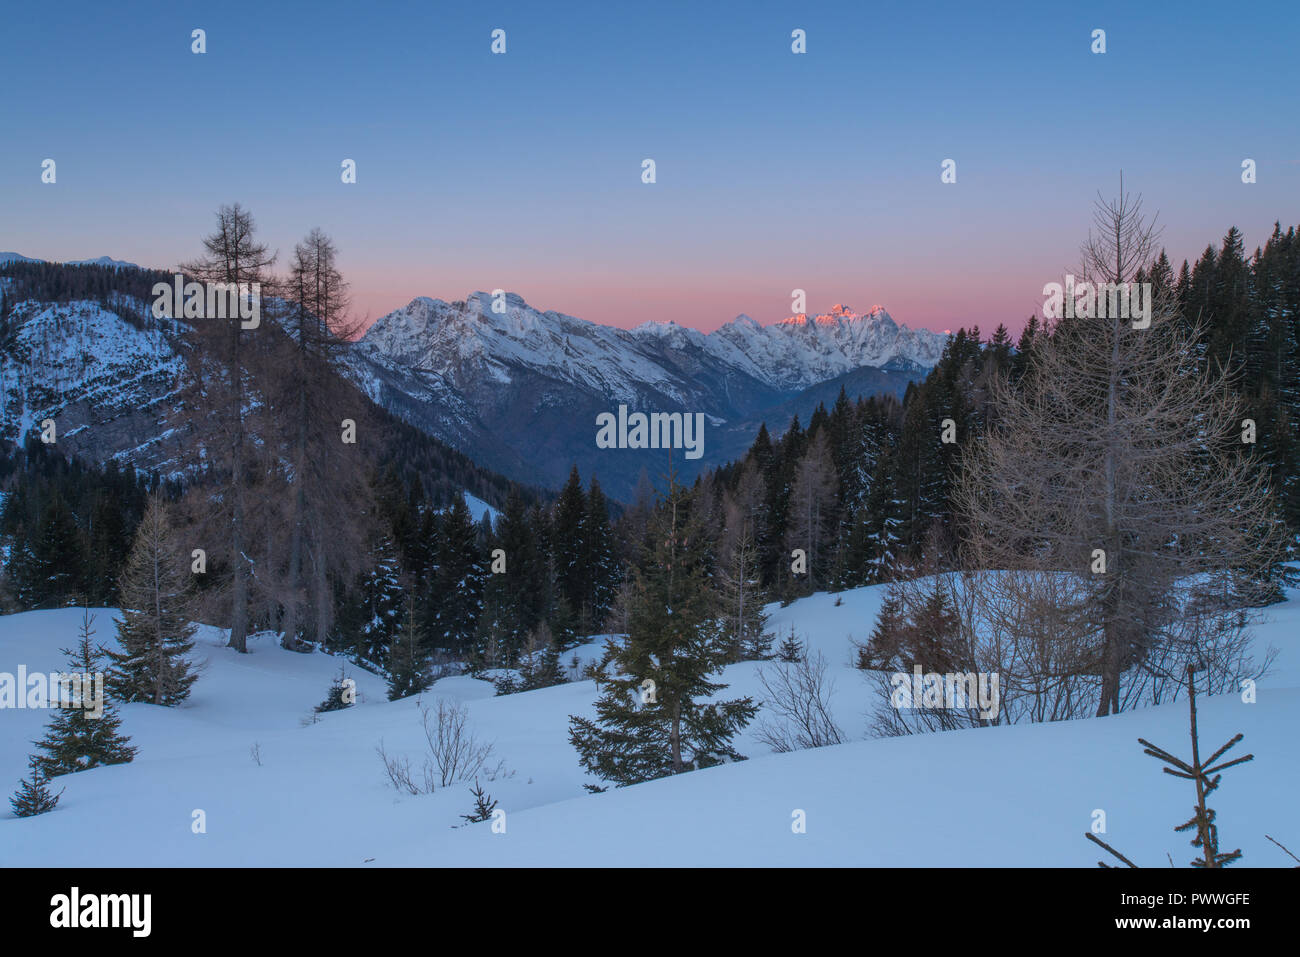 Paisible, serein avec sunrise alpenglow sur les Alpes italiennes. Premier jour de l'année, de la neige fraîche, des couleurs vives et des montagnes aux sommets enneigés au milieu des arbres. Banque D'Images